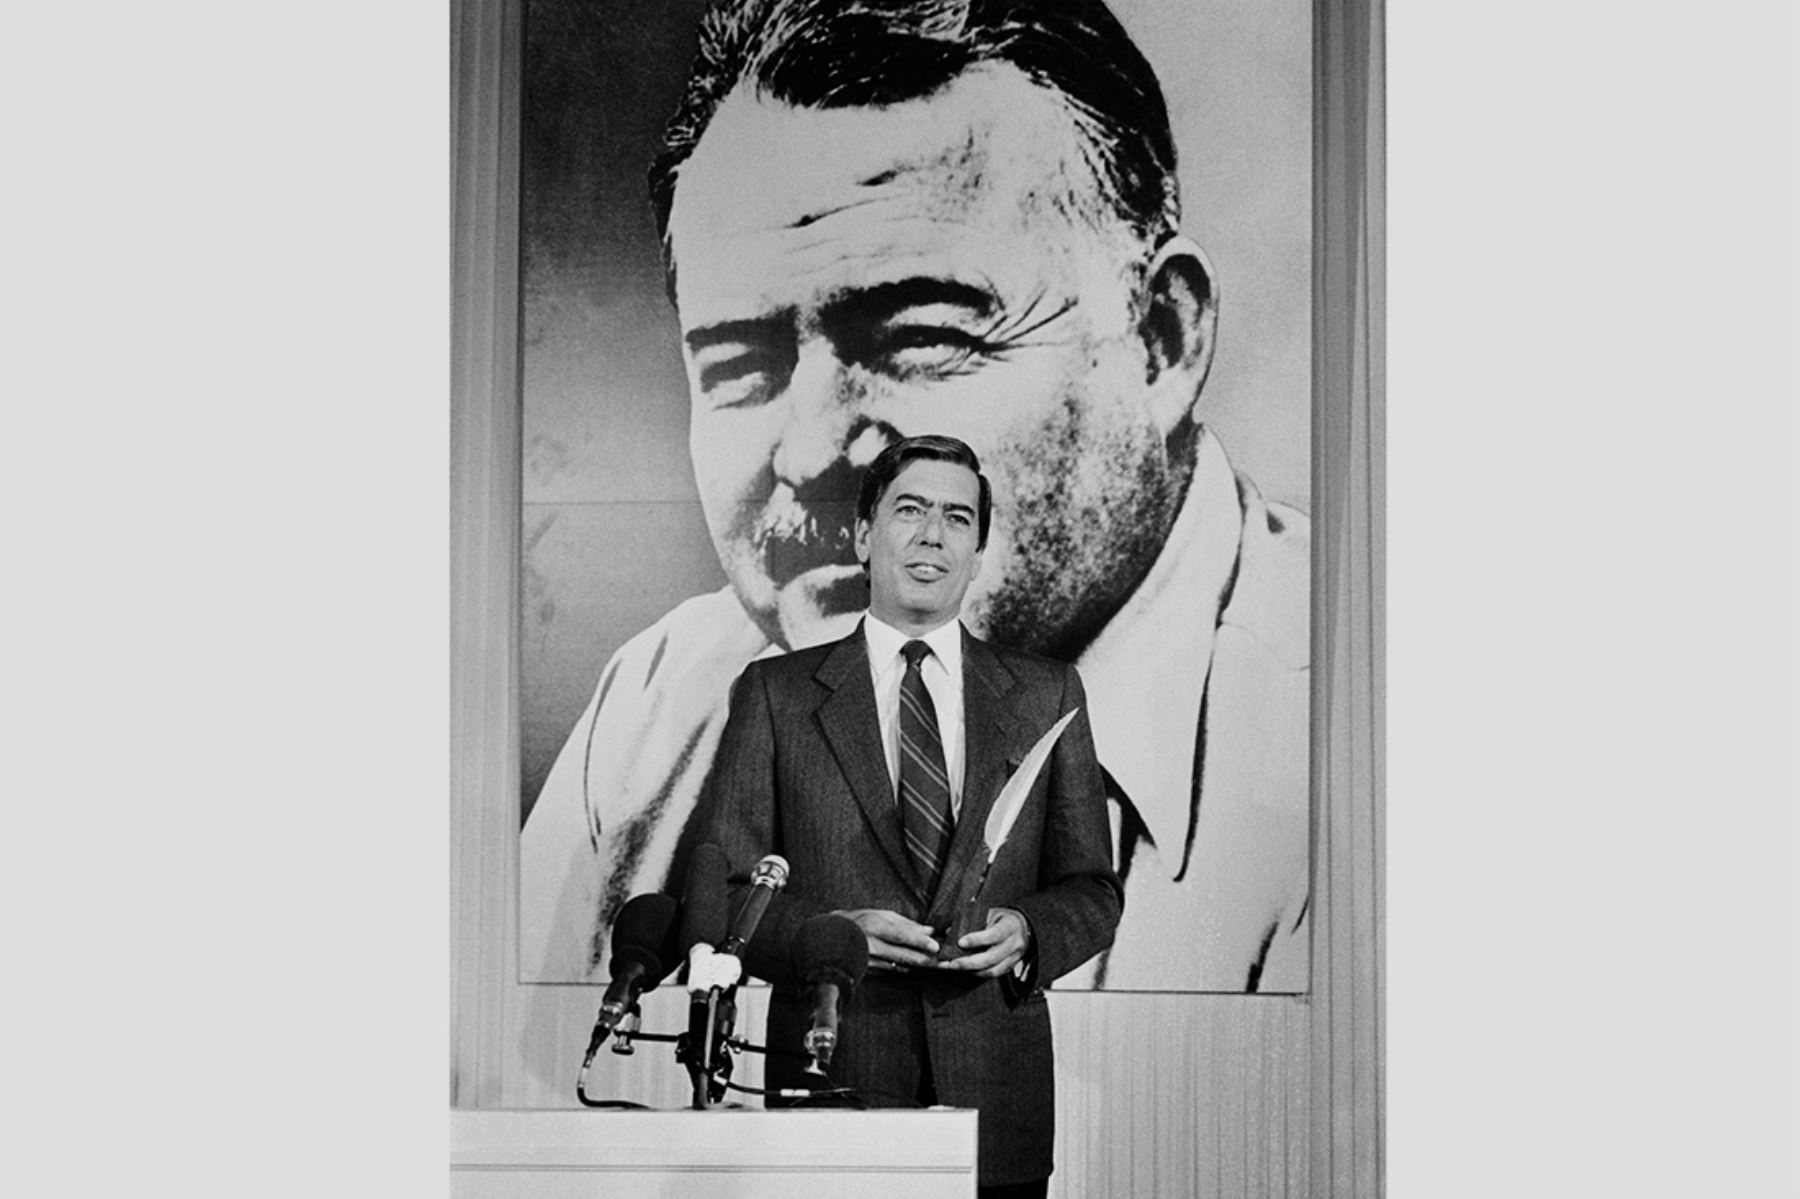 El escritor peruano Mario Vargas Llosa recibió el Premio Ritz-Hemingway, el 29 de marzo de 1985, en el Hotel Ritz de París, antiguo lugar frecuentado por Hemingway. Vargas Llosa fue homenajeado por su novela "La guerra del fin del mundo". Foto: AFP